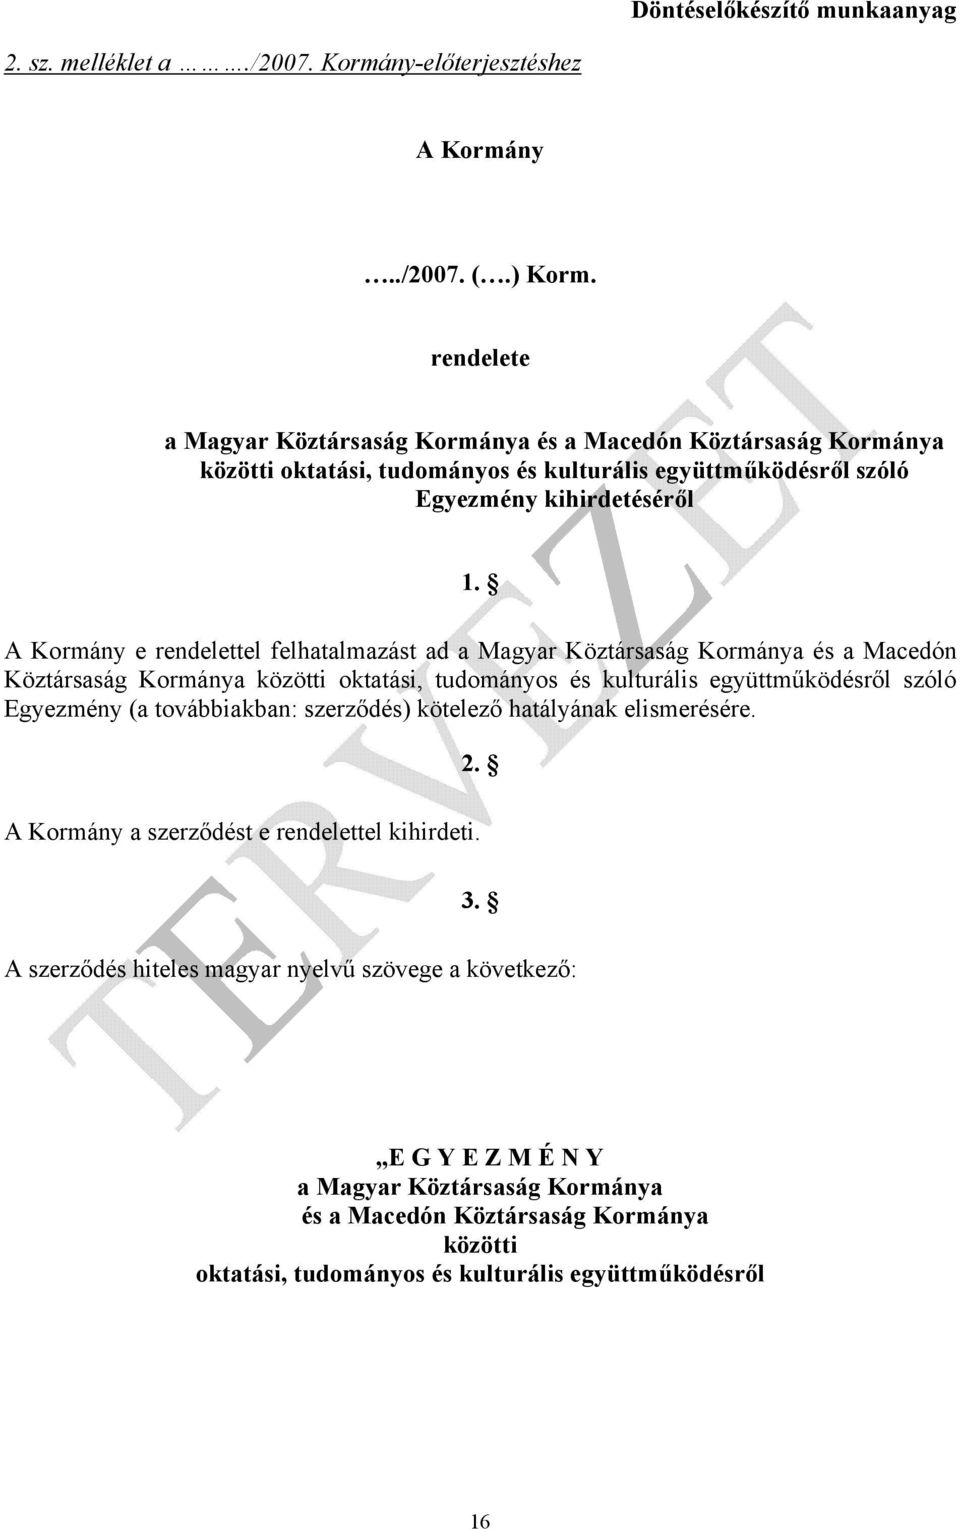 A Kormány e rendelettel felhatalmazást ad a Magyar Köztársaság Kormánya és a Macedón Köztársaság Kormánya közötti oktatási, tudományos és kulturális együttműködésről szóló Egyezmény (a